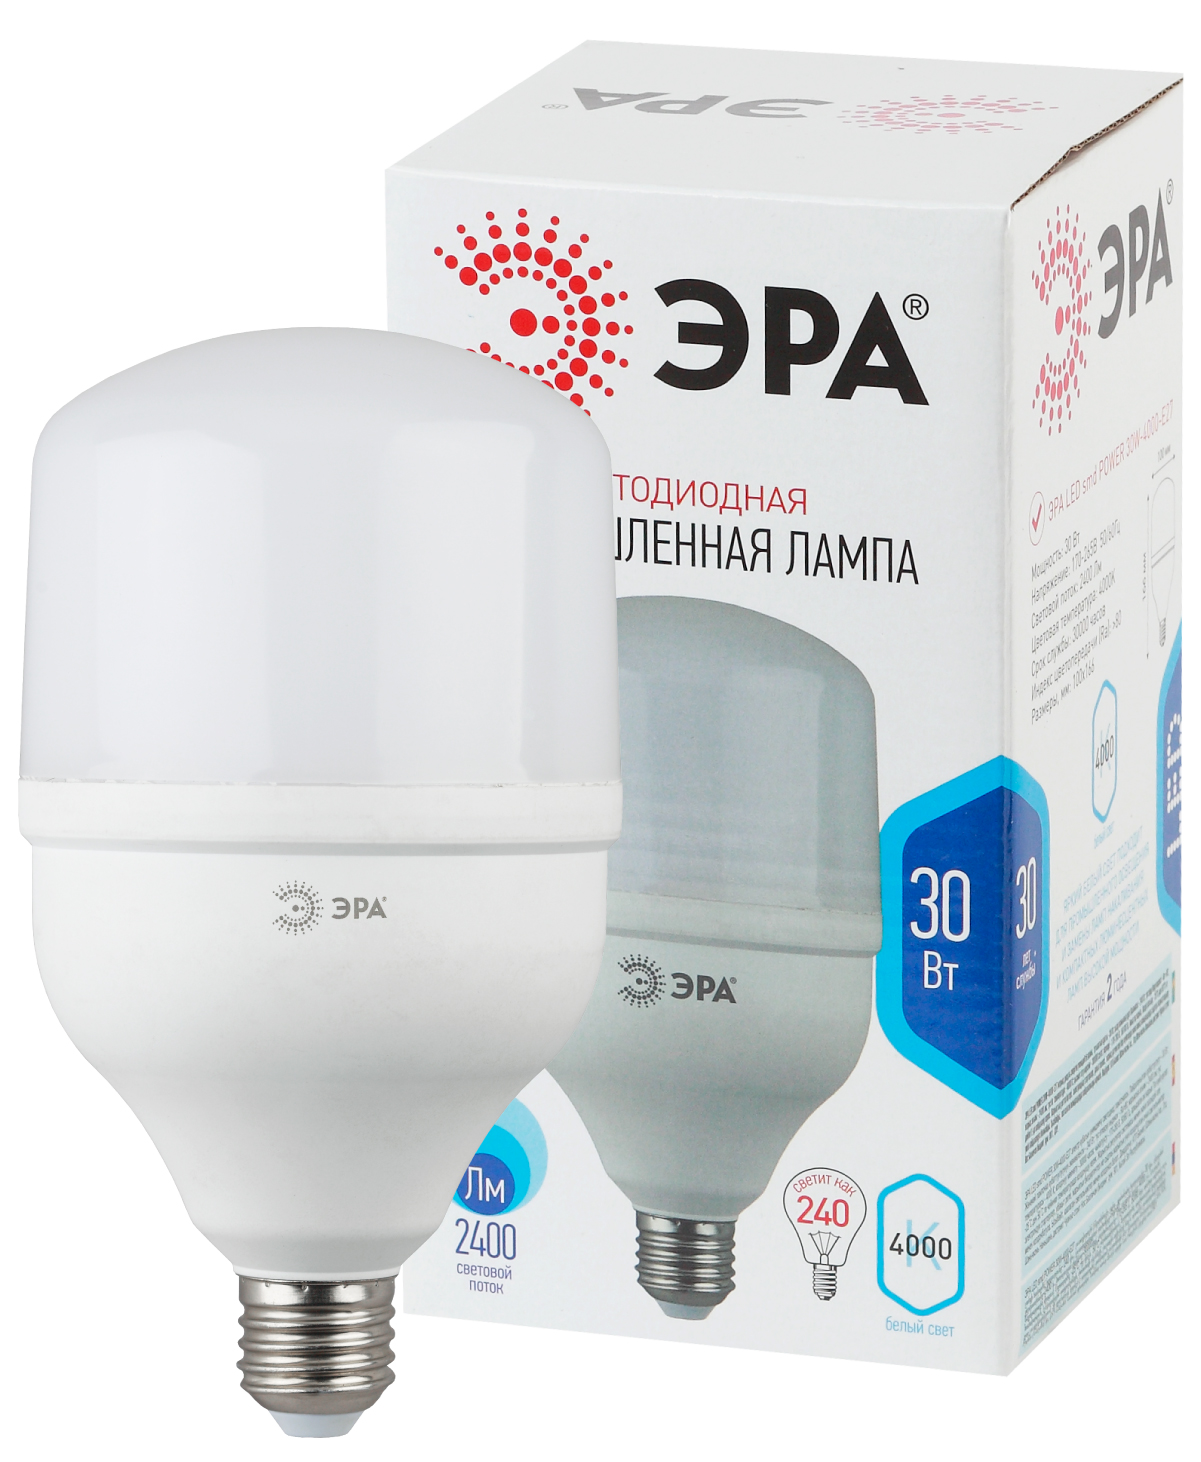 Лампа светодиодная ЭРА STD LED POWER T100-30W-4000-E27 E27 / Е27 30Вт кoлокол нейтральный белый свет